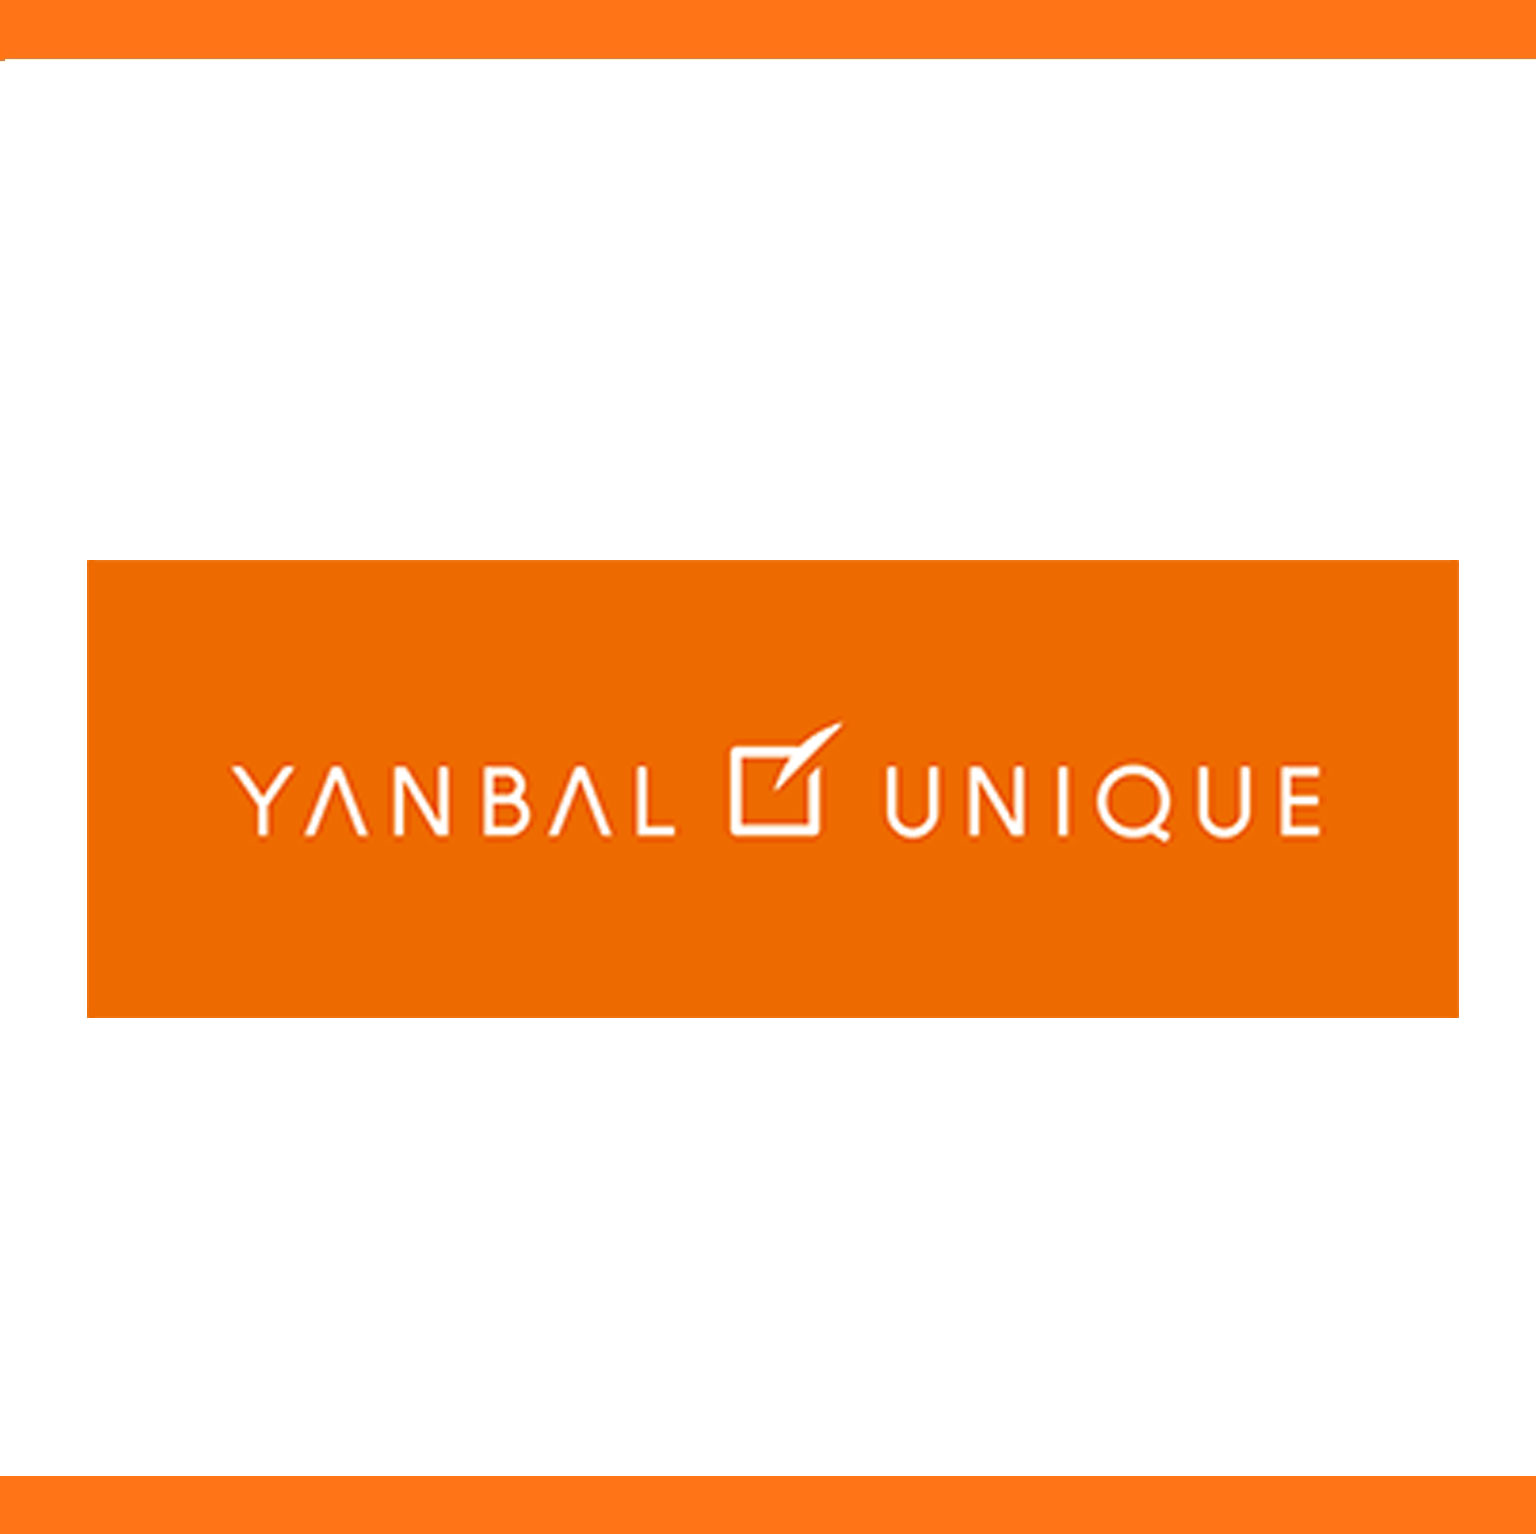 yanball